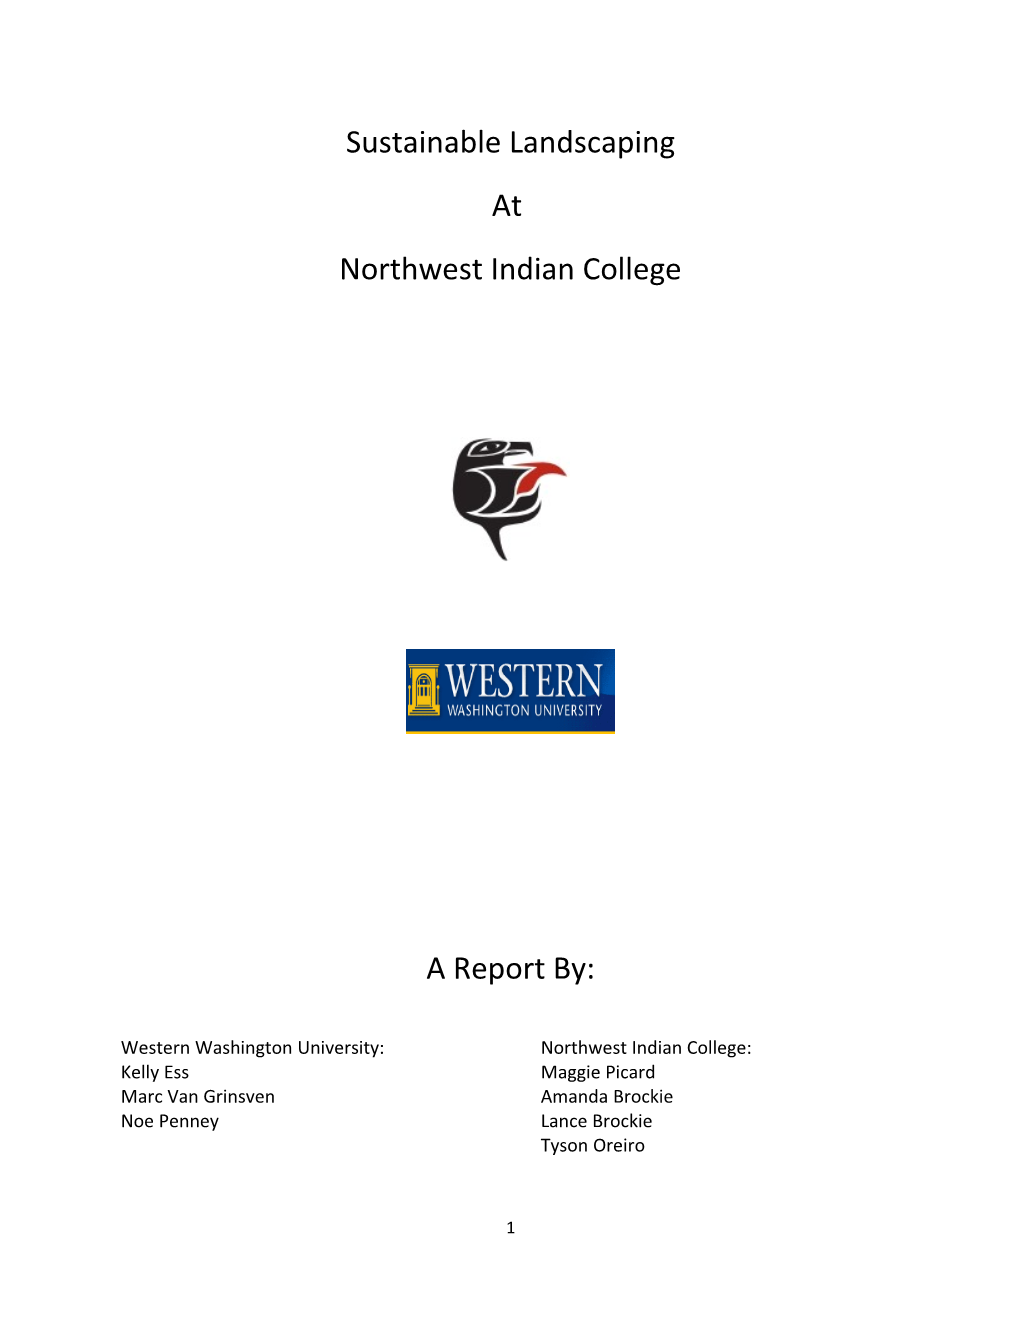 Western Washington University: Northwest Indian College